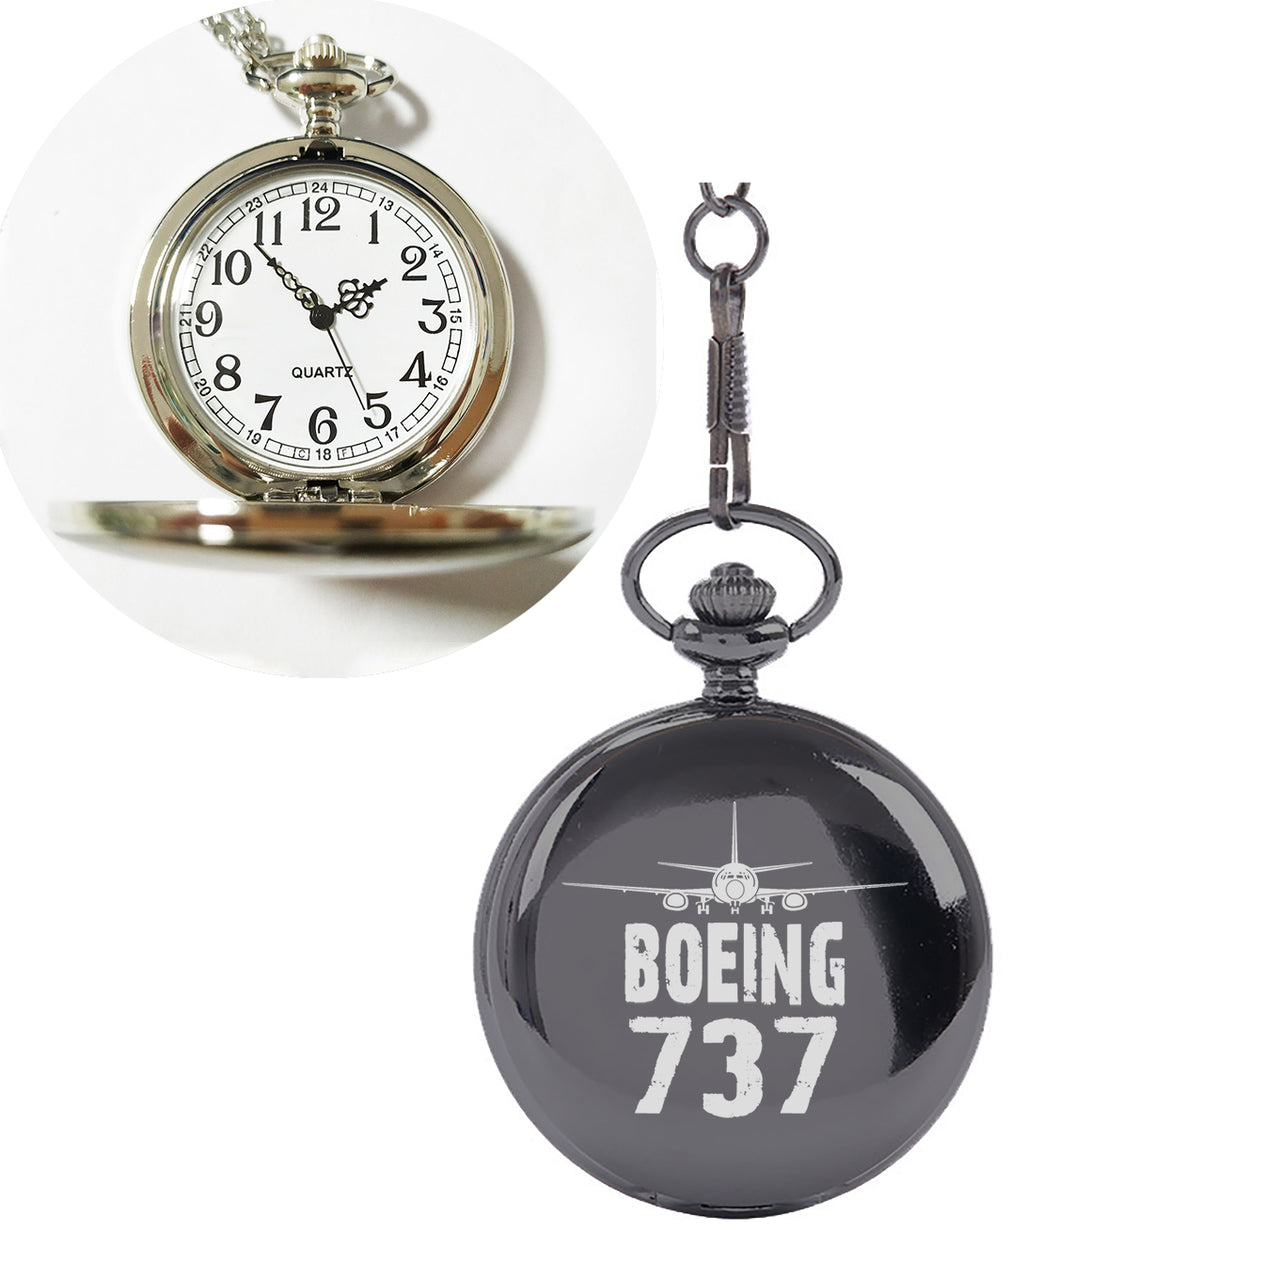 Boeing 737 & Plane Designed Pocket Watches